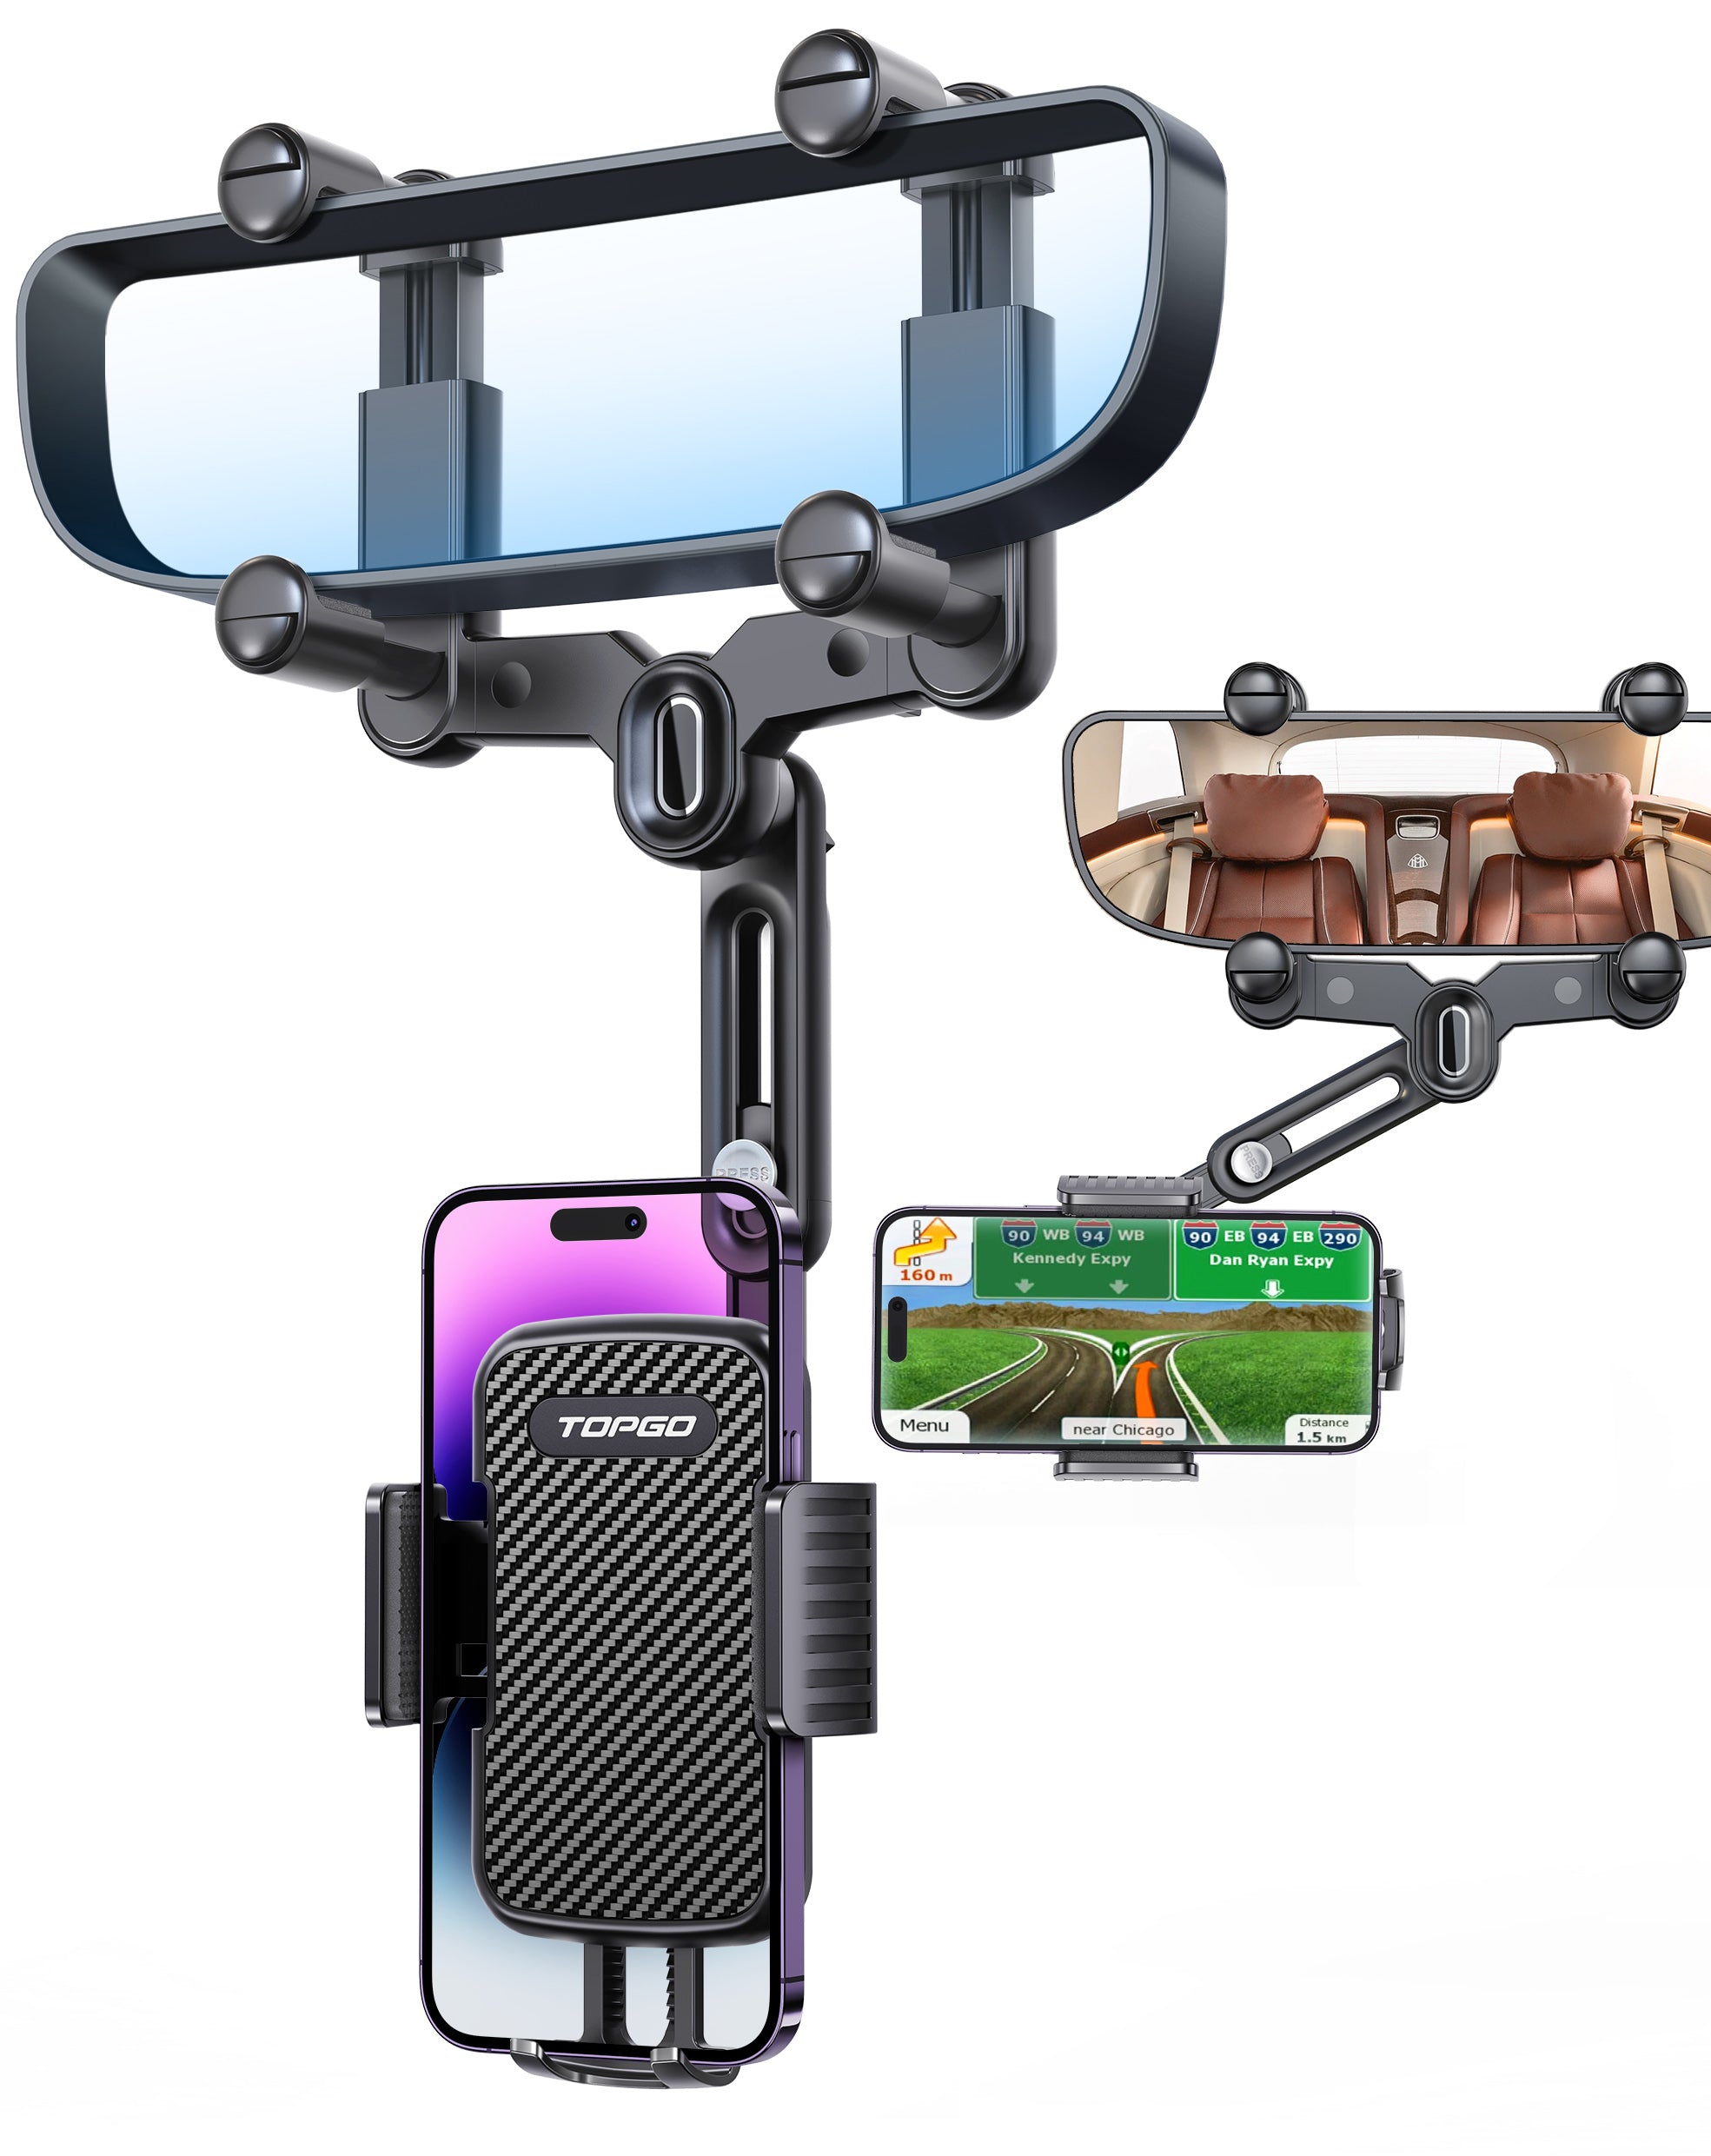 Soporte para teléfono con espejo retrovisor Soporte giratorio y retráctil para teléfono para automóvil 